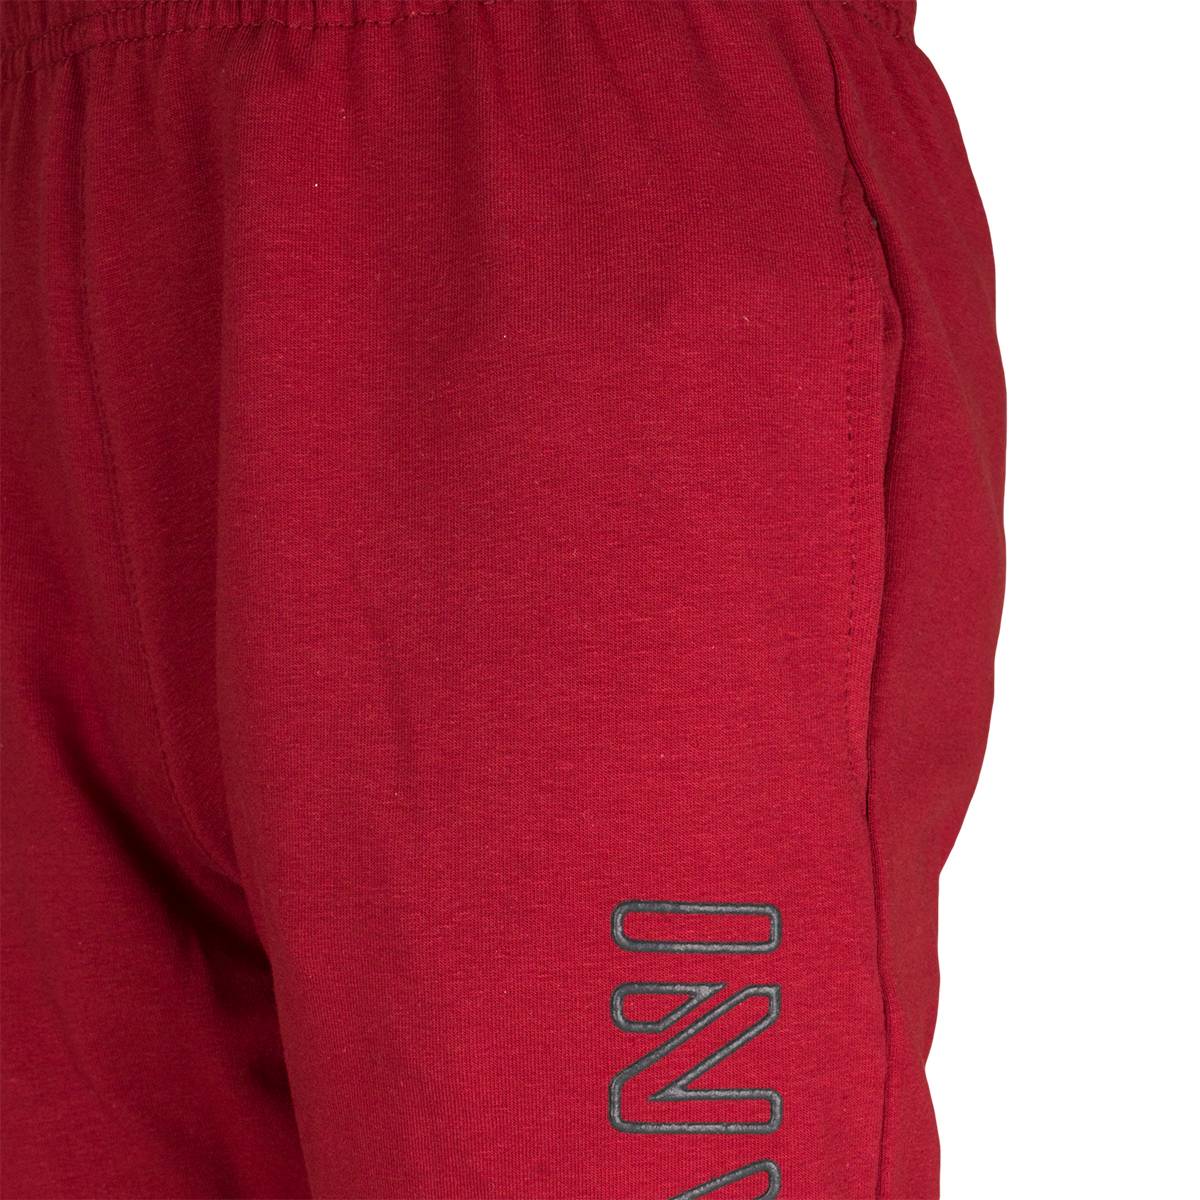 Spodnie dresowe dla chłopca, kolor bordowy, aplikacja na nogawce INVASION, Tup Tup